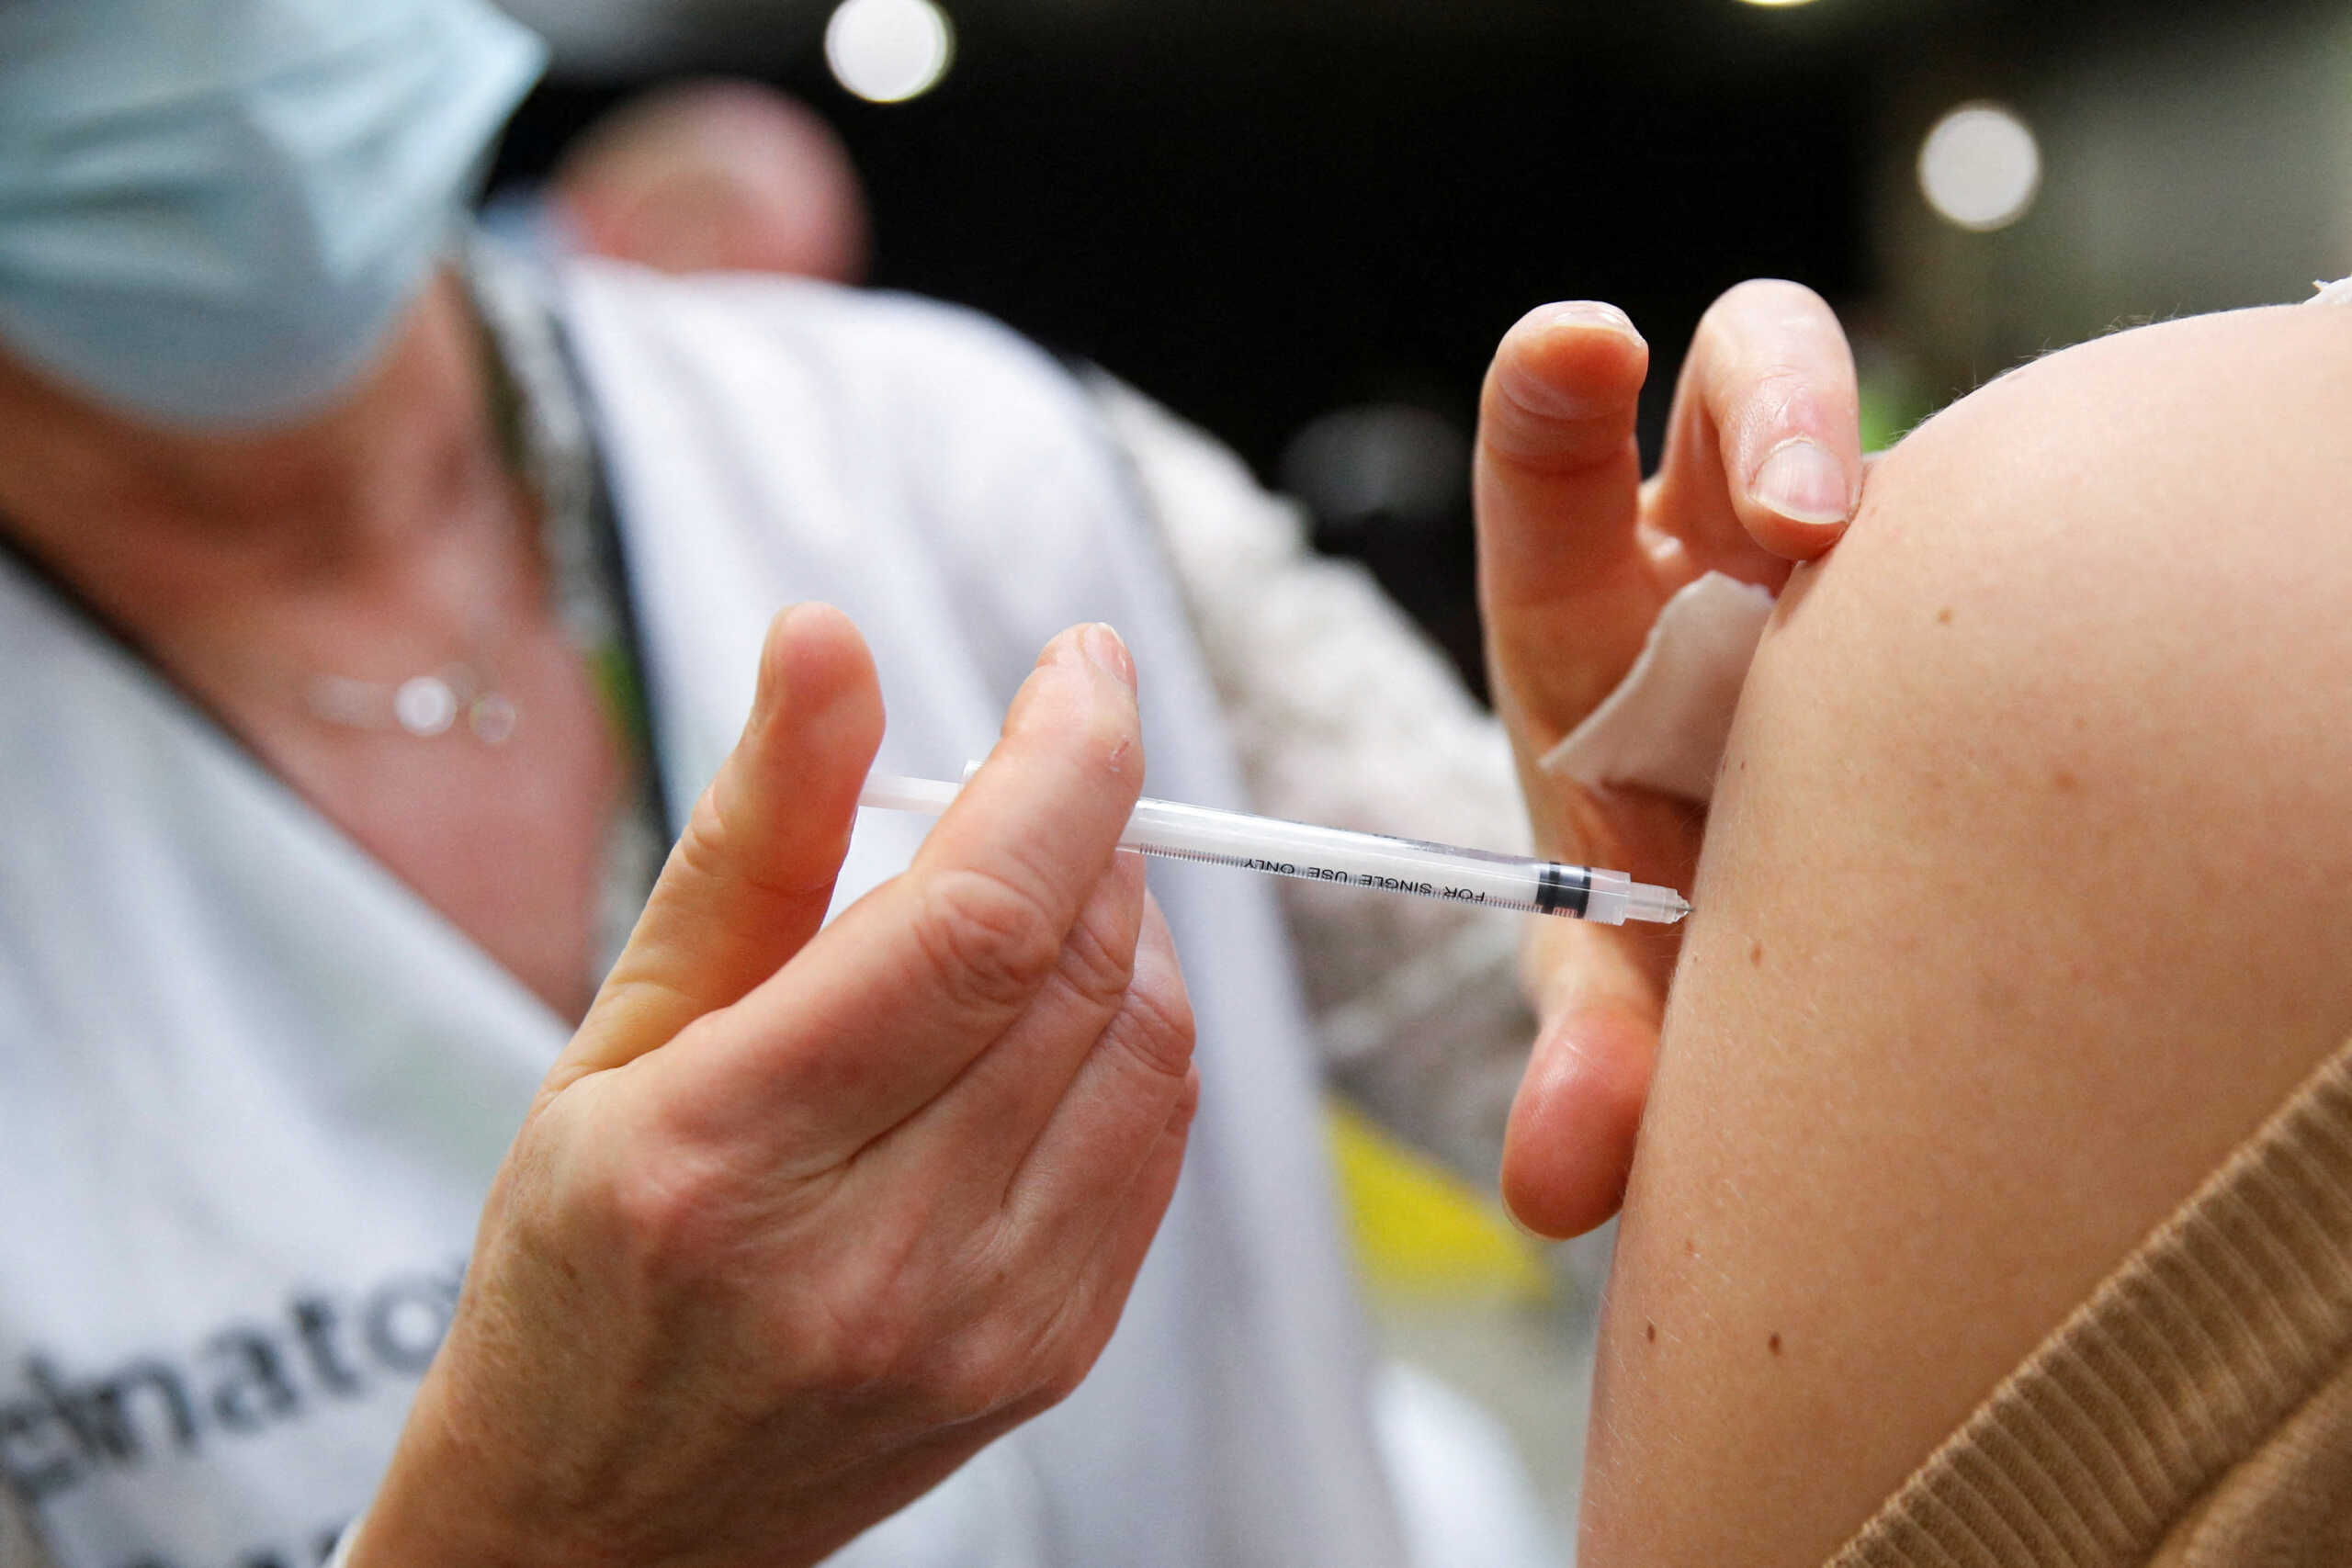 Ιταλία – κορονοϊός: Αυξήθηκαν τα κρούσματα, ενώ με βραδείς ρυθμούς πάνε οι εμβολιασμοί